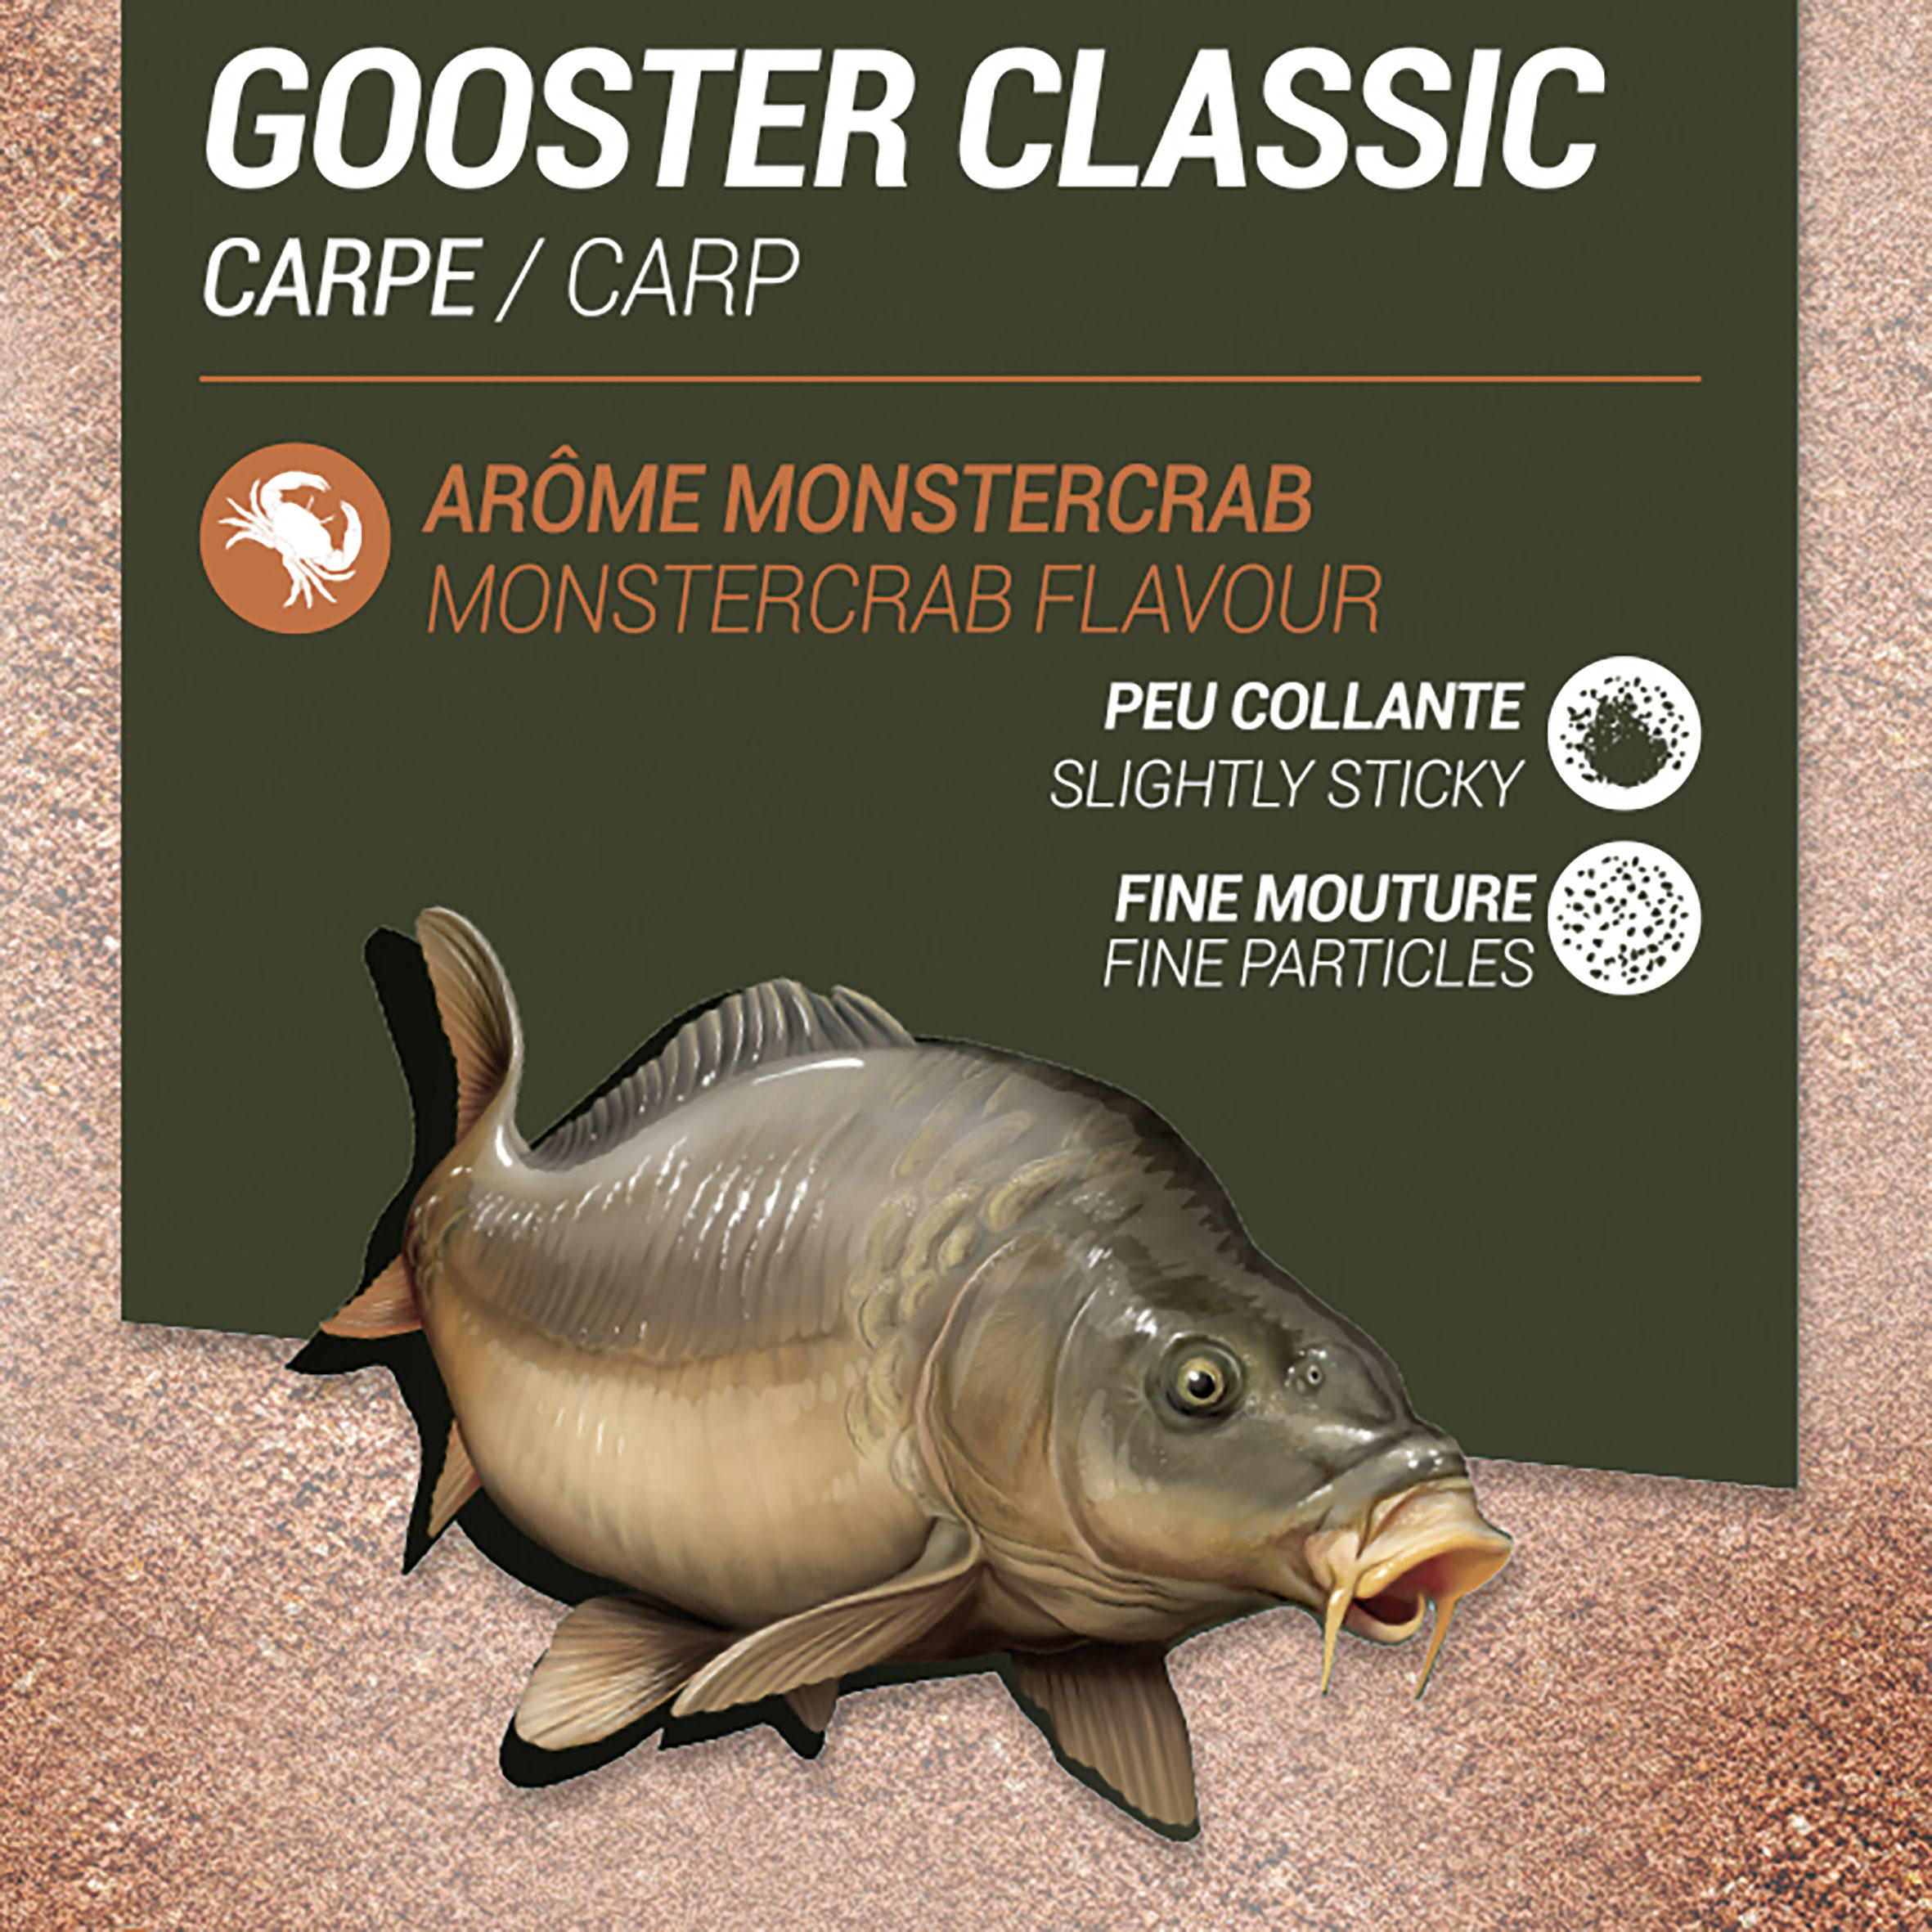 GOOSTER CLASSIC CARP BAIT ORANGE MONSTER CRAB 1kg 2/5